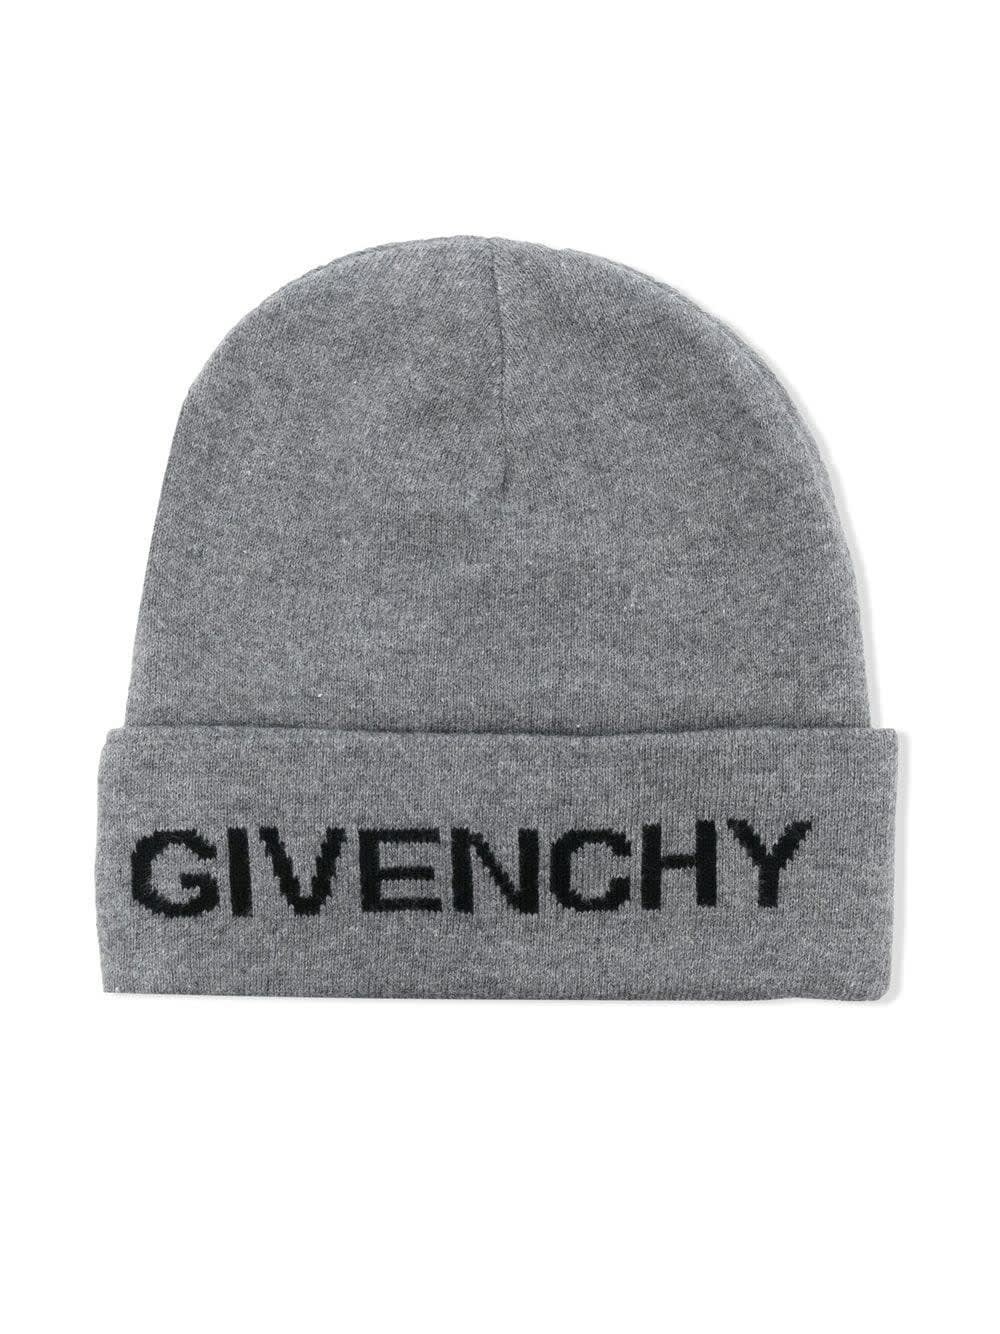 Givenchy Kids Grey Beanie With Black Logo